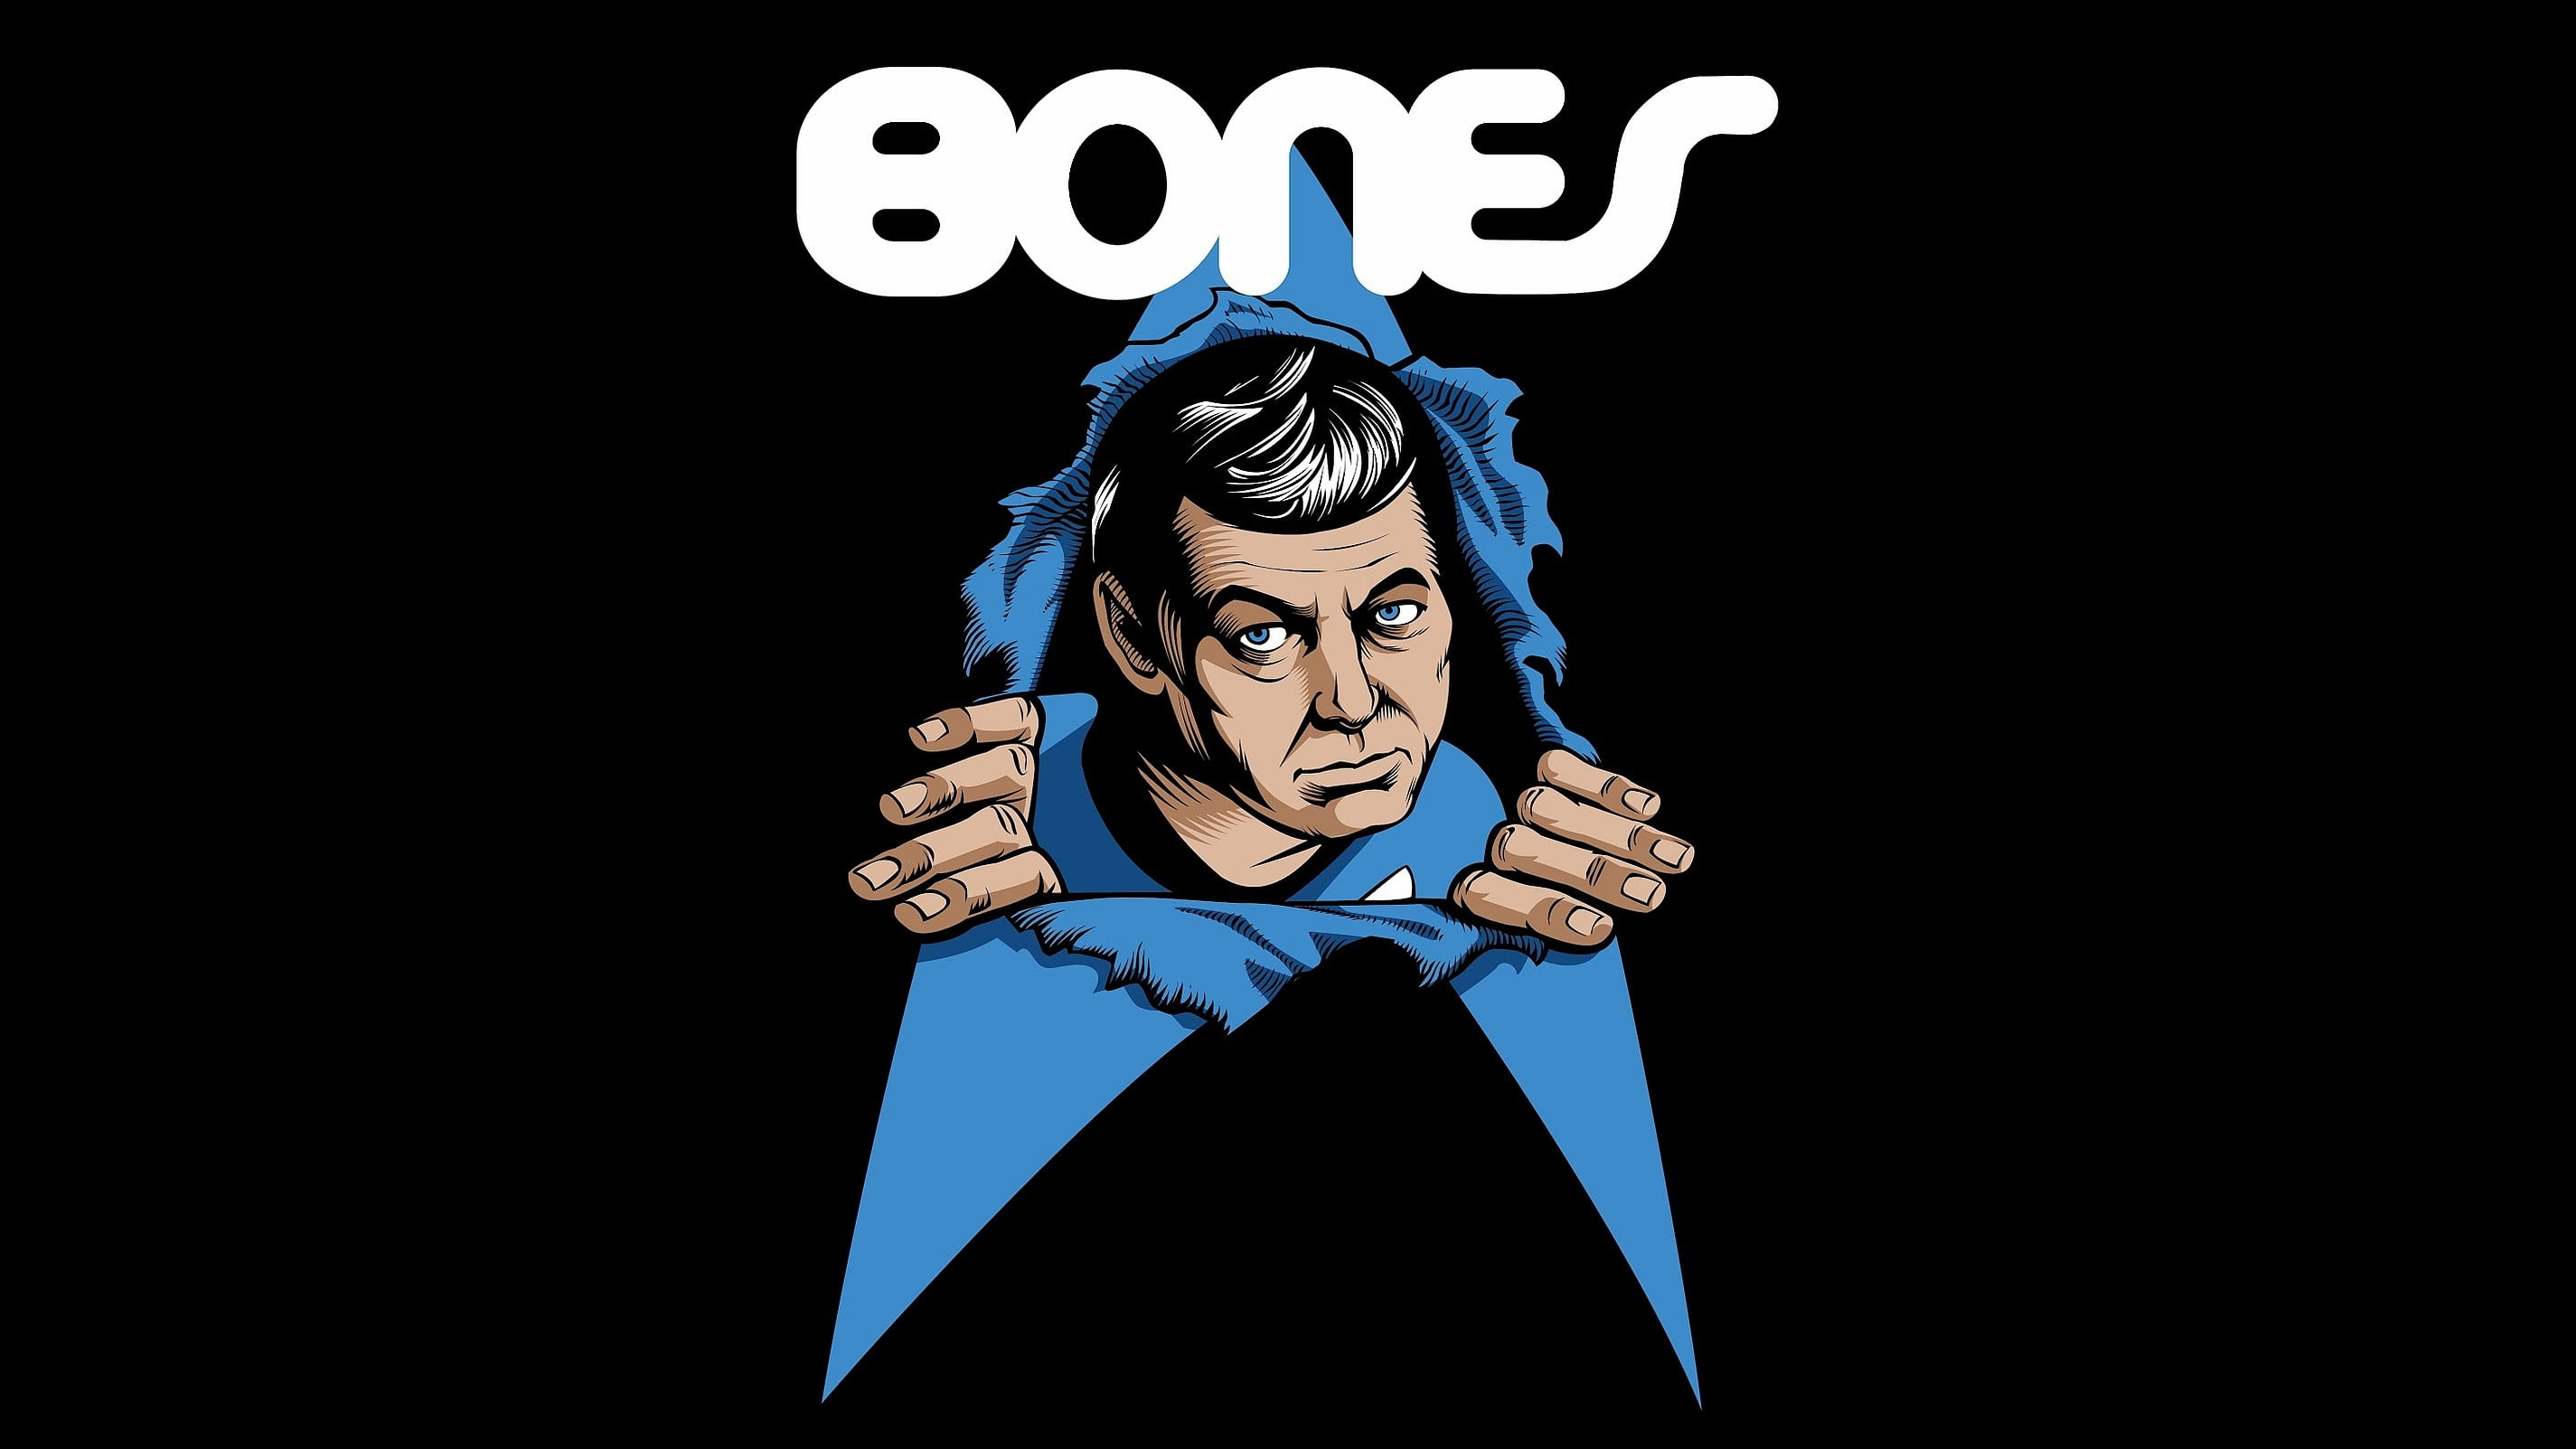 Star Trek Bones Dr. Leonard McCoy wallpaper, artwork, communication